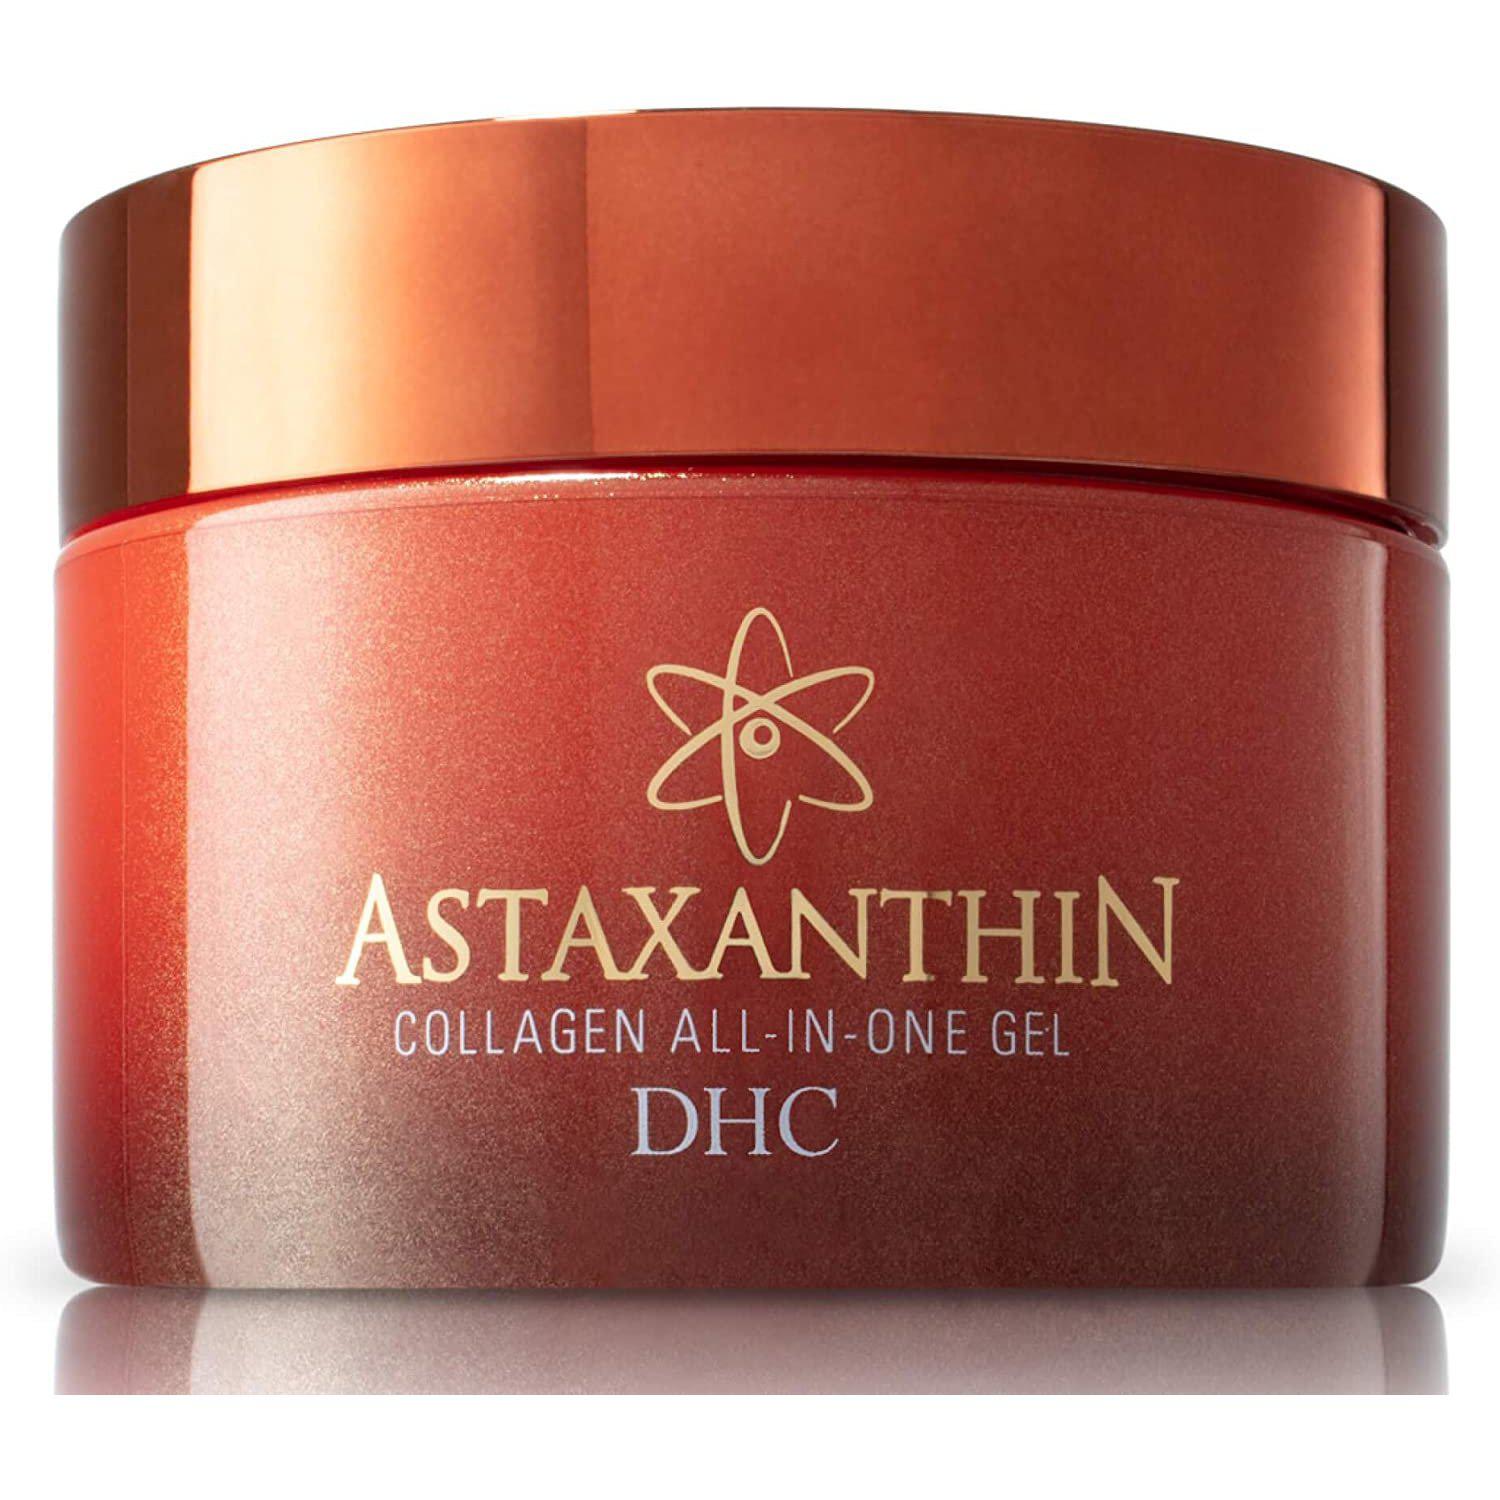 DHC Astaxanthin Collagen All-in-One Gel 120g, Japanese Taste